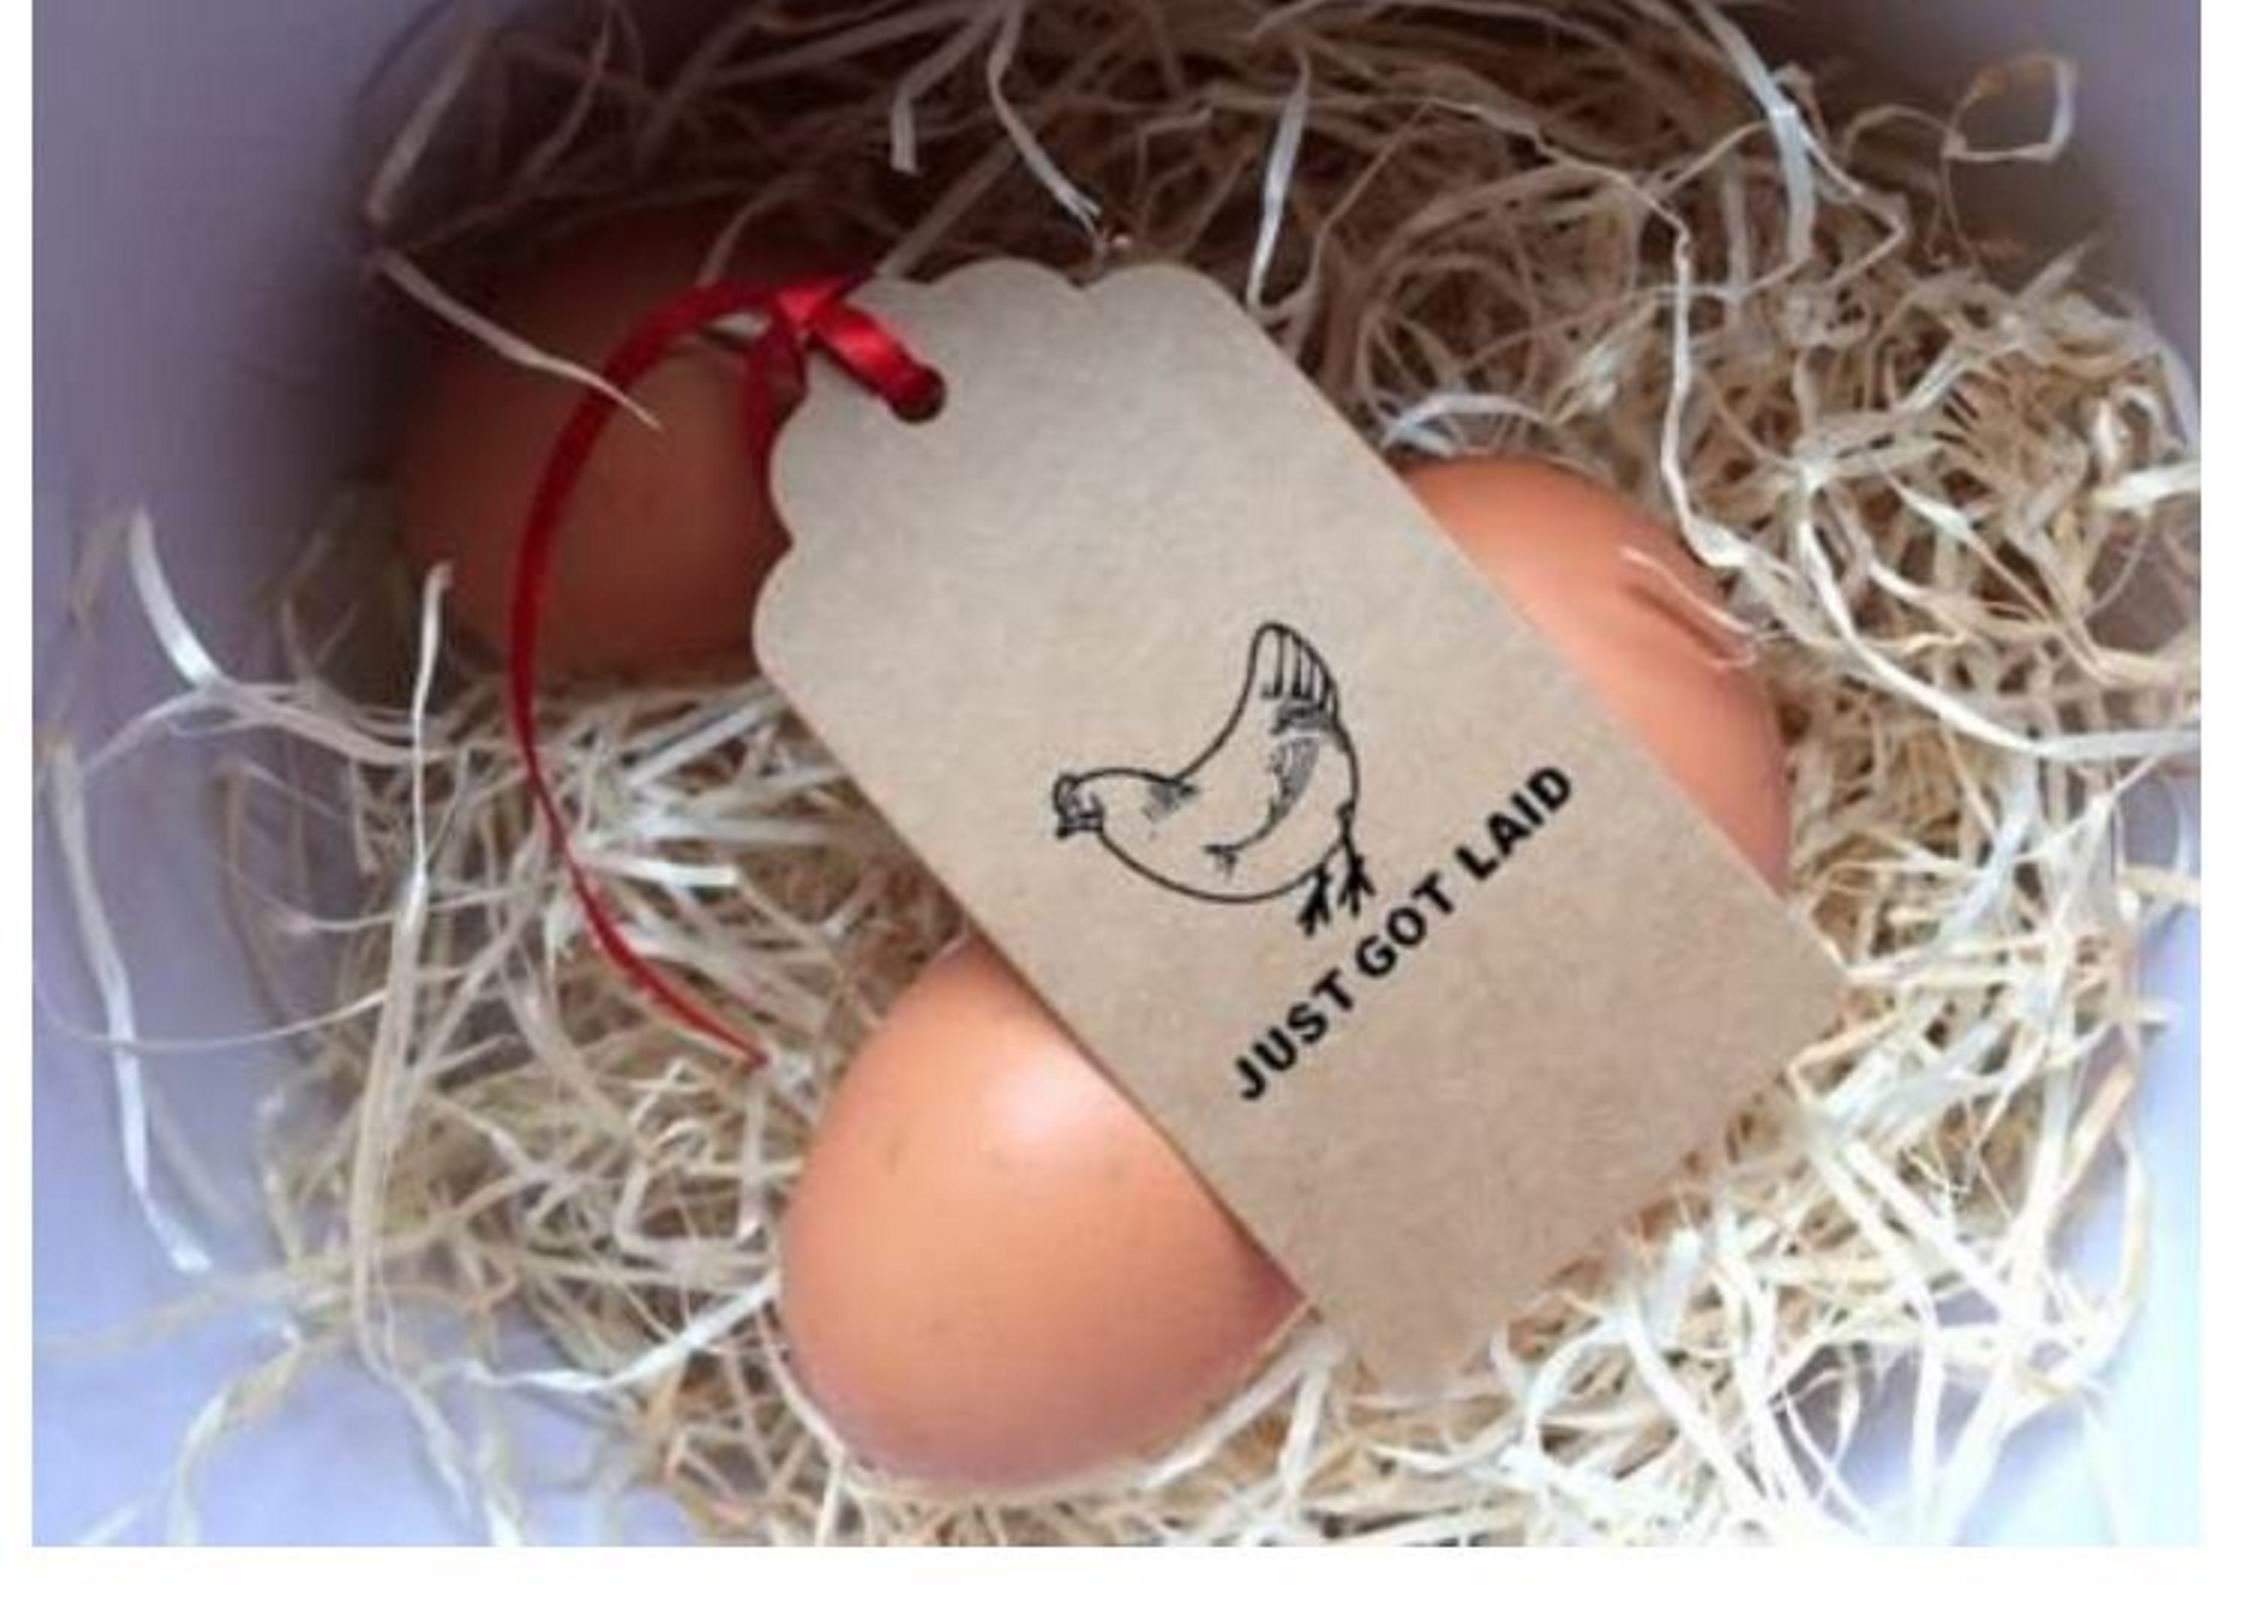 EGG CARTON STAMP Chicken Egg Stamp Date Wheel Fresh Farm Eggs